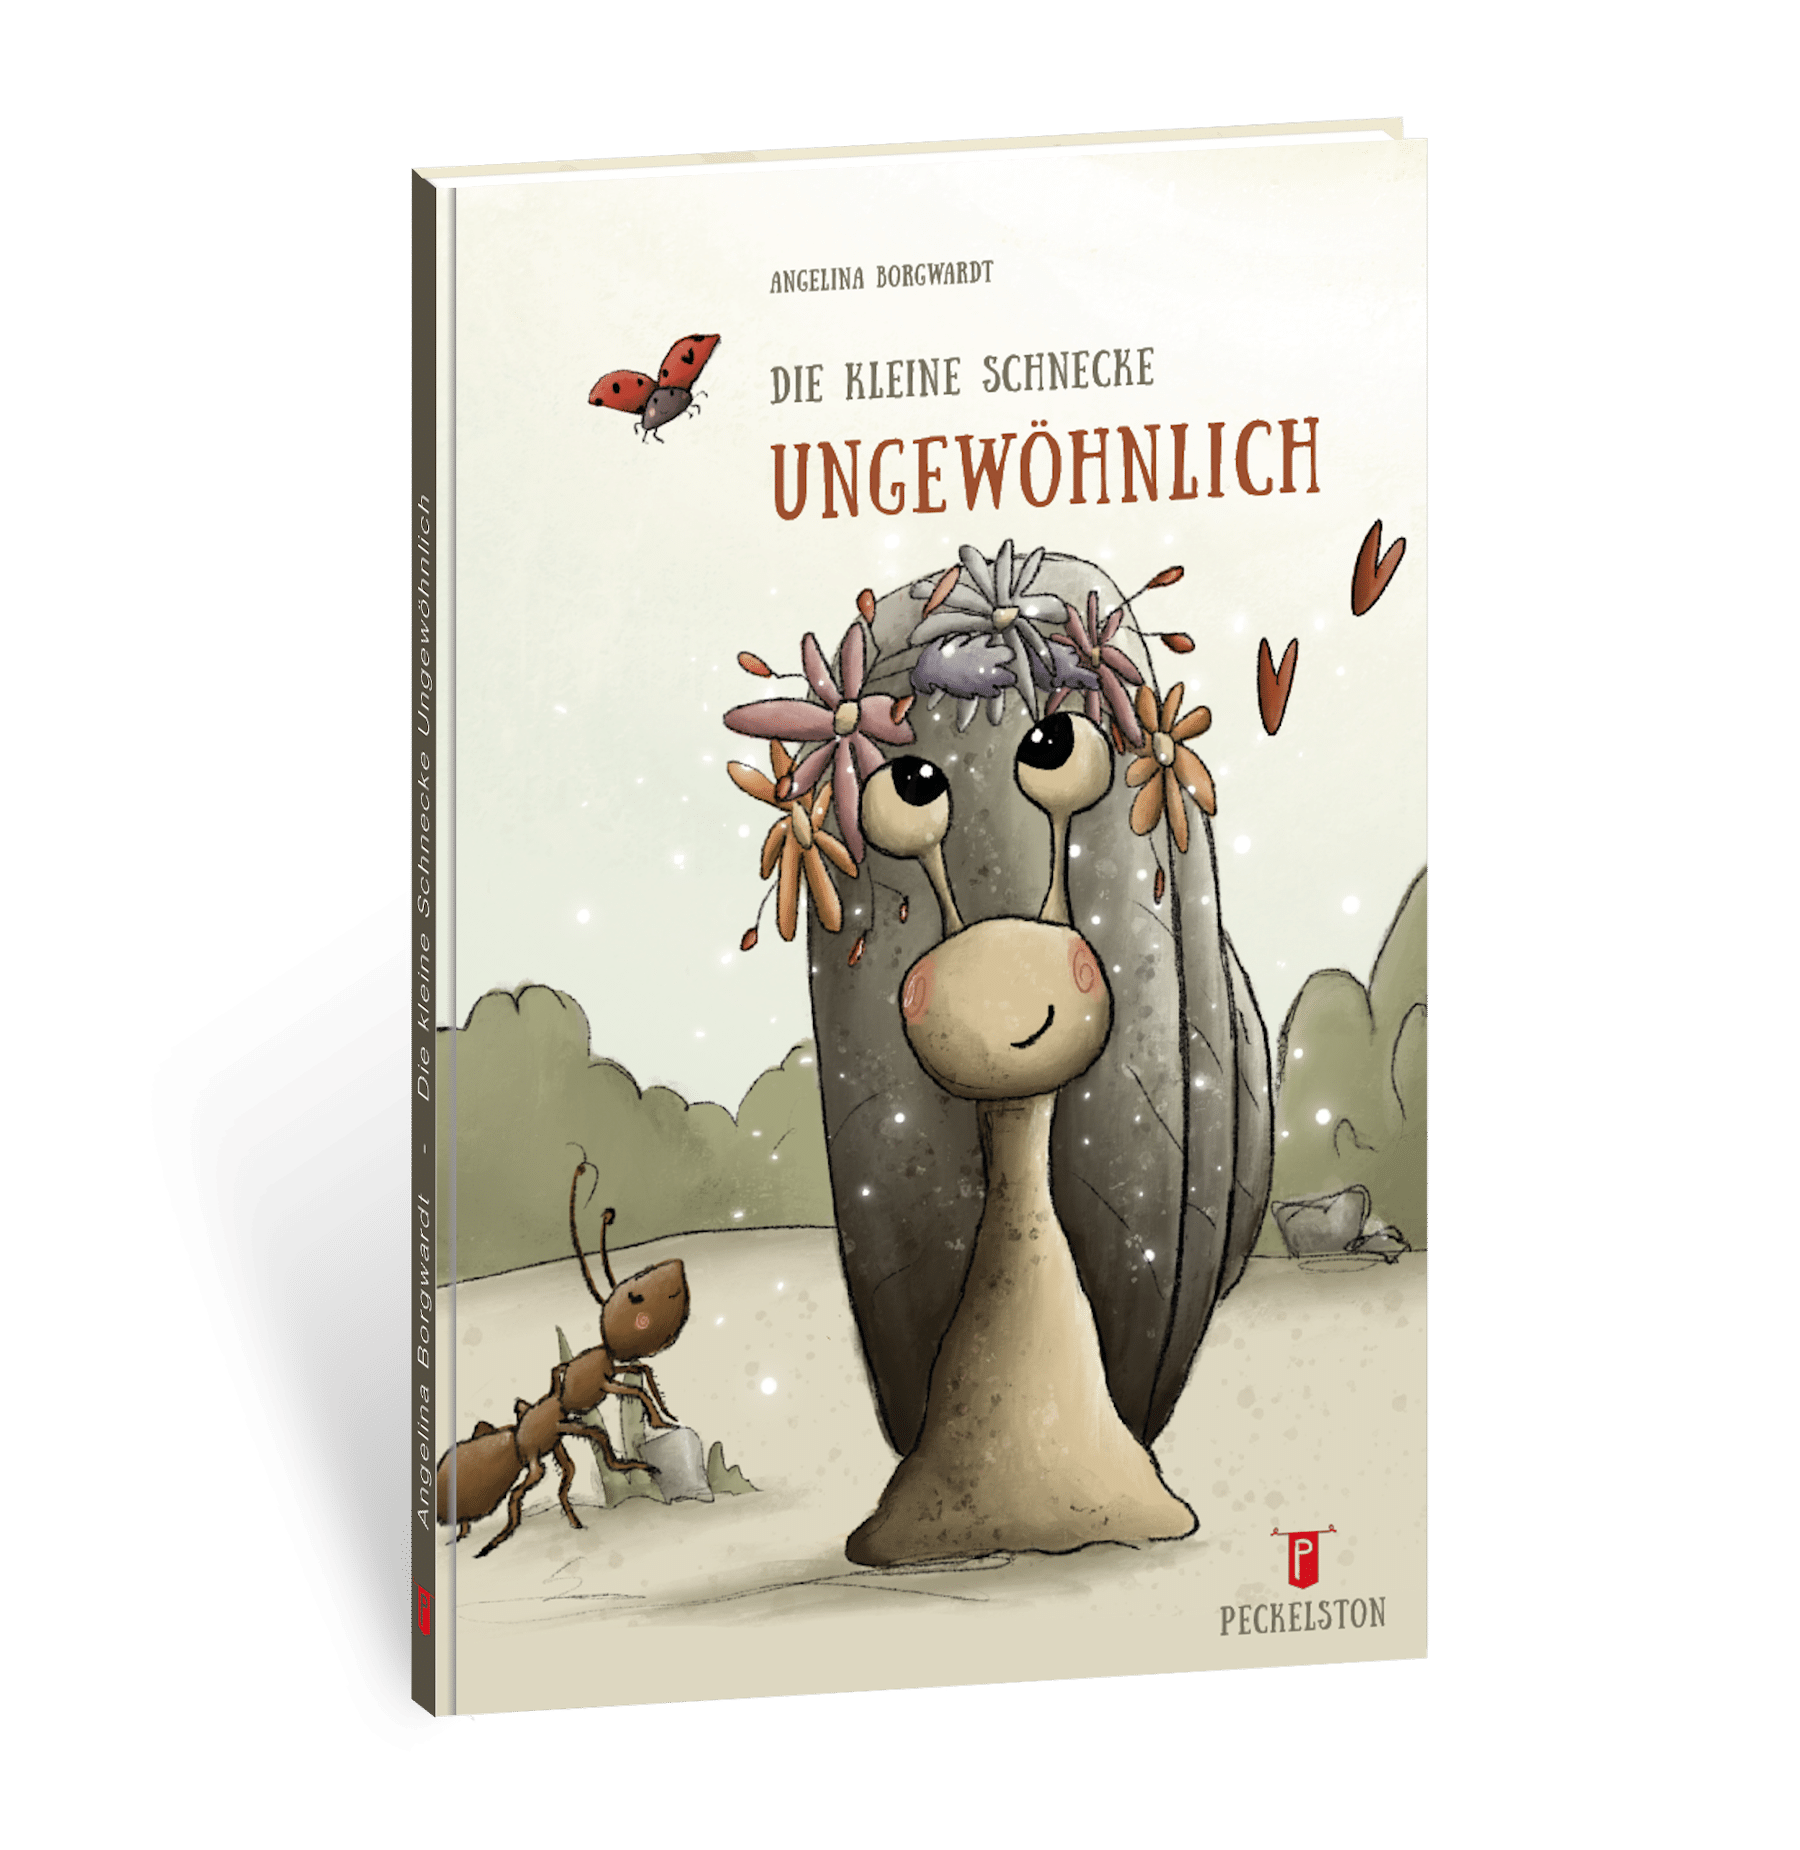 peckelston kinderbuchverlag angelina borgwardt kleine schnecke ungewöhnlich